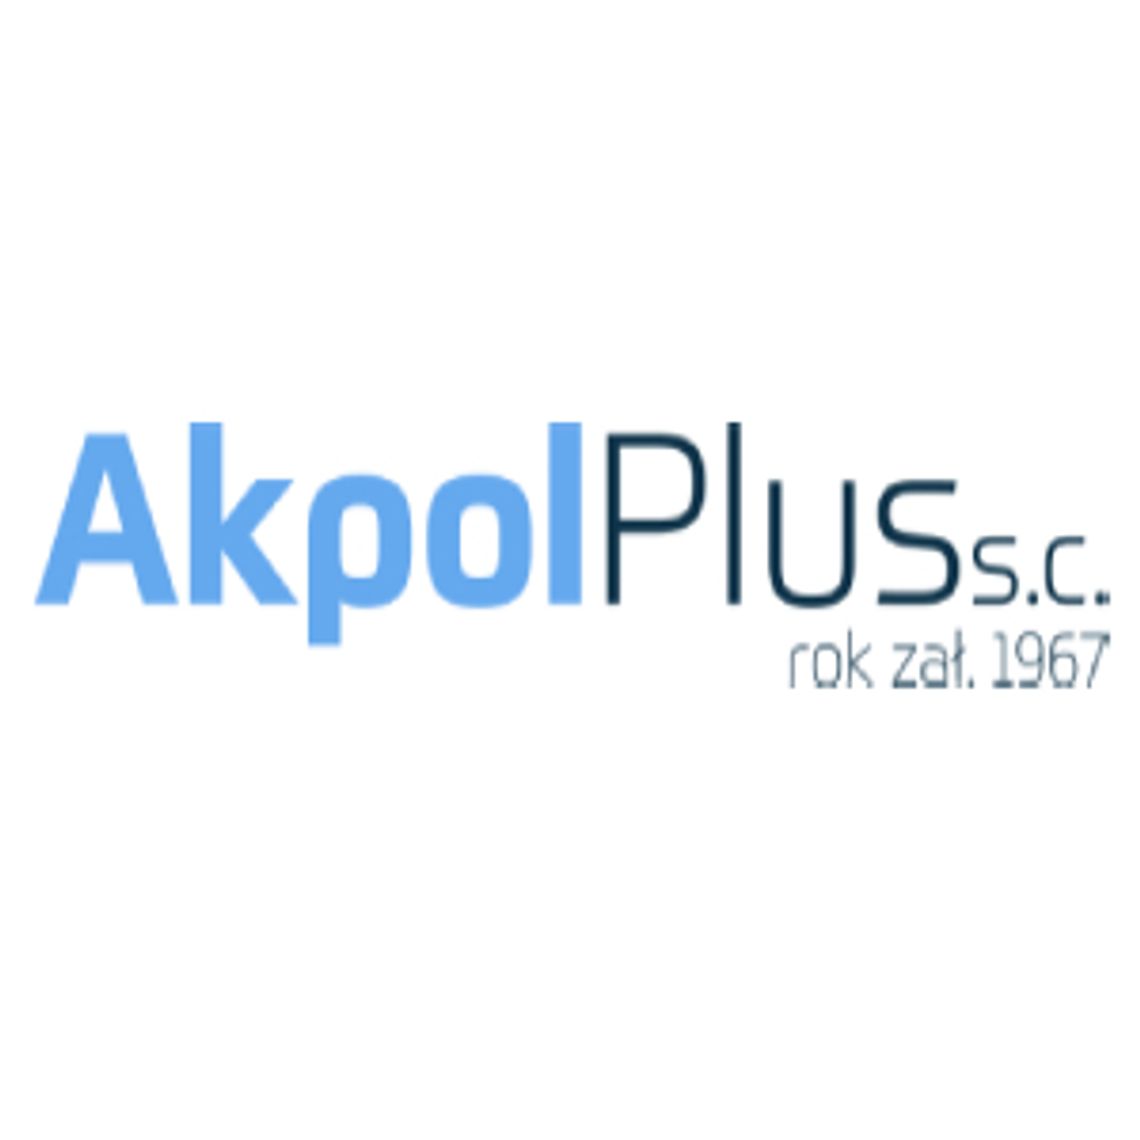 Siatka do pakowania choinek - Akpol Plus